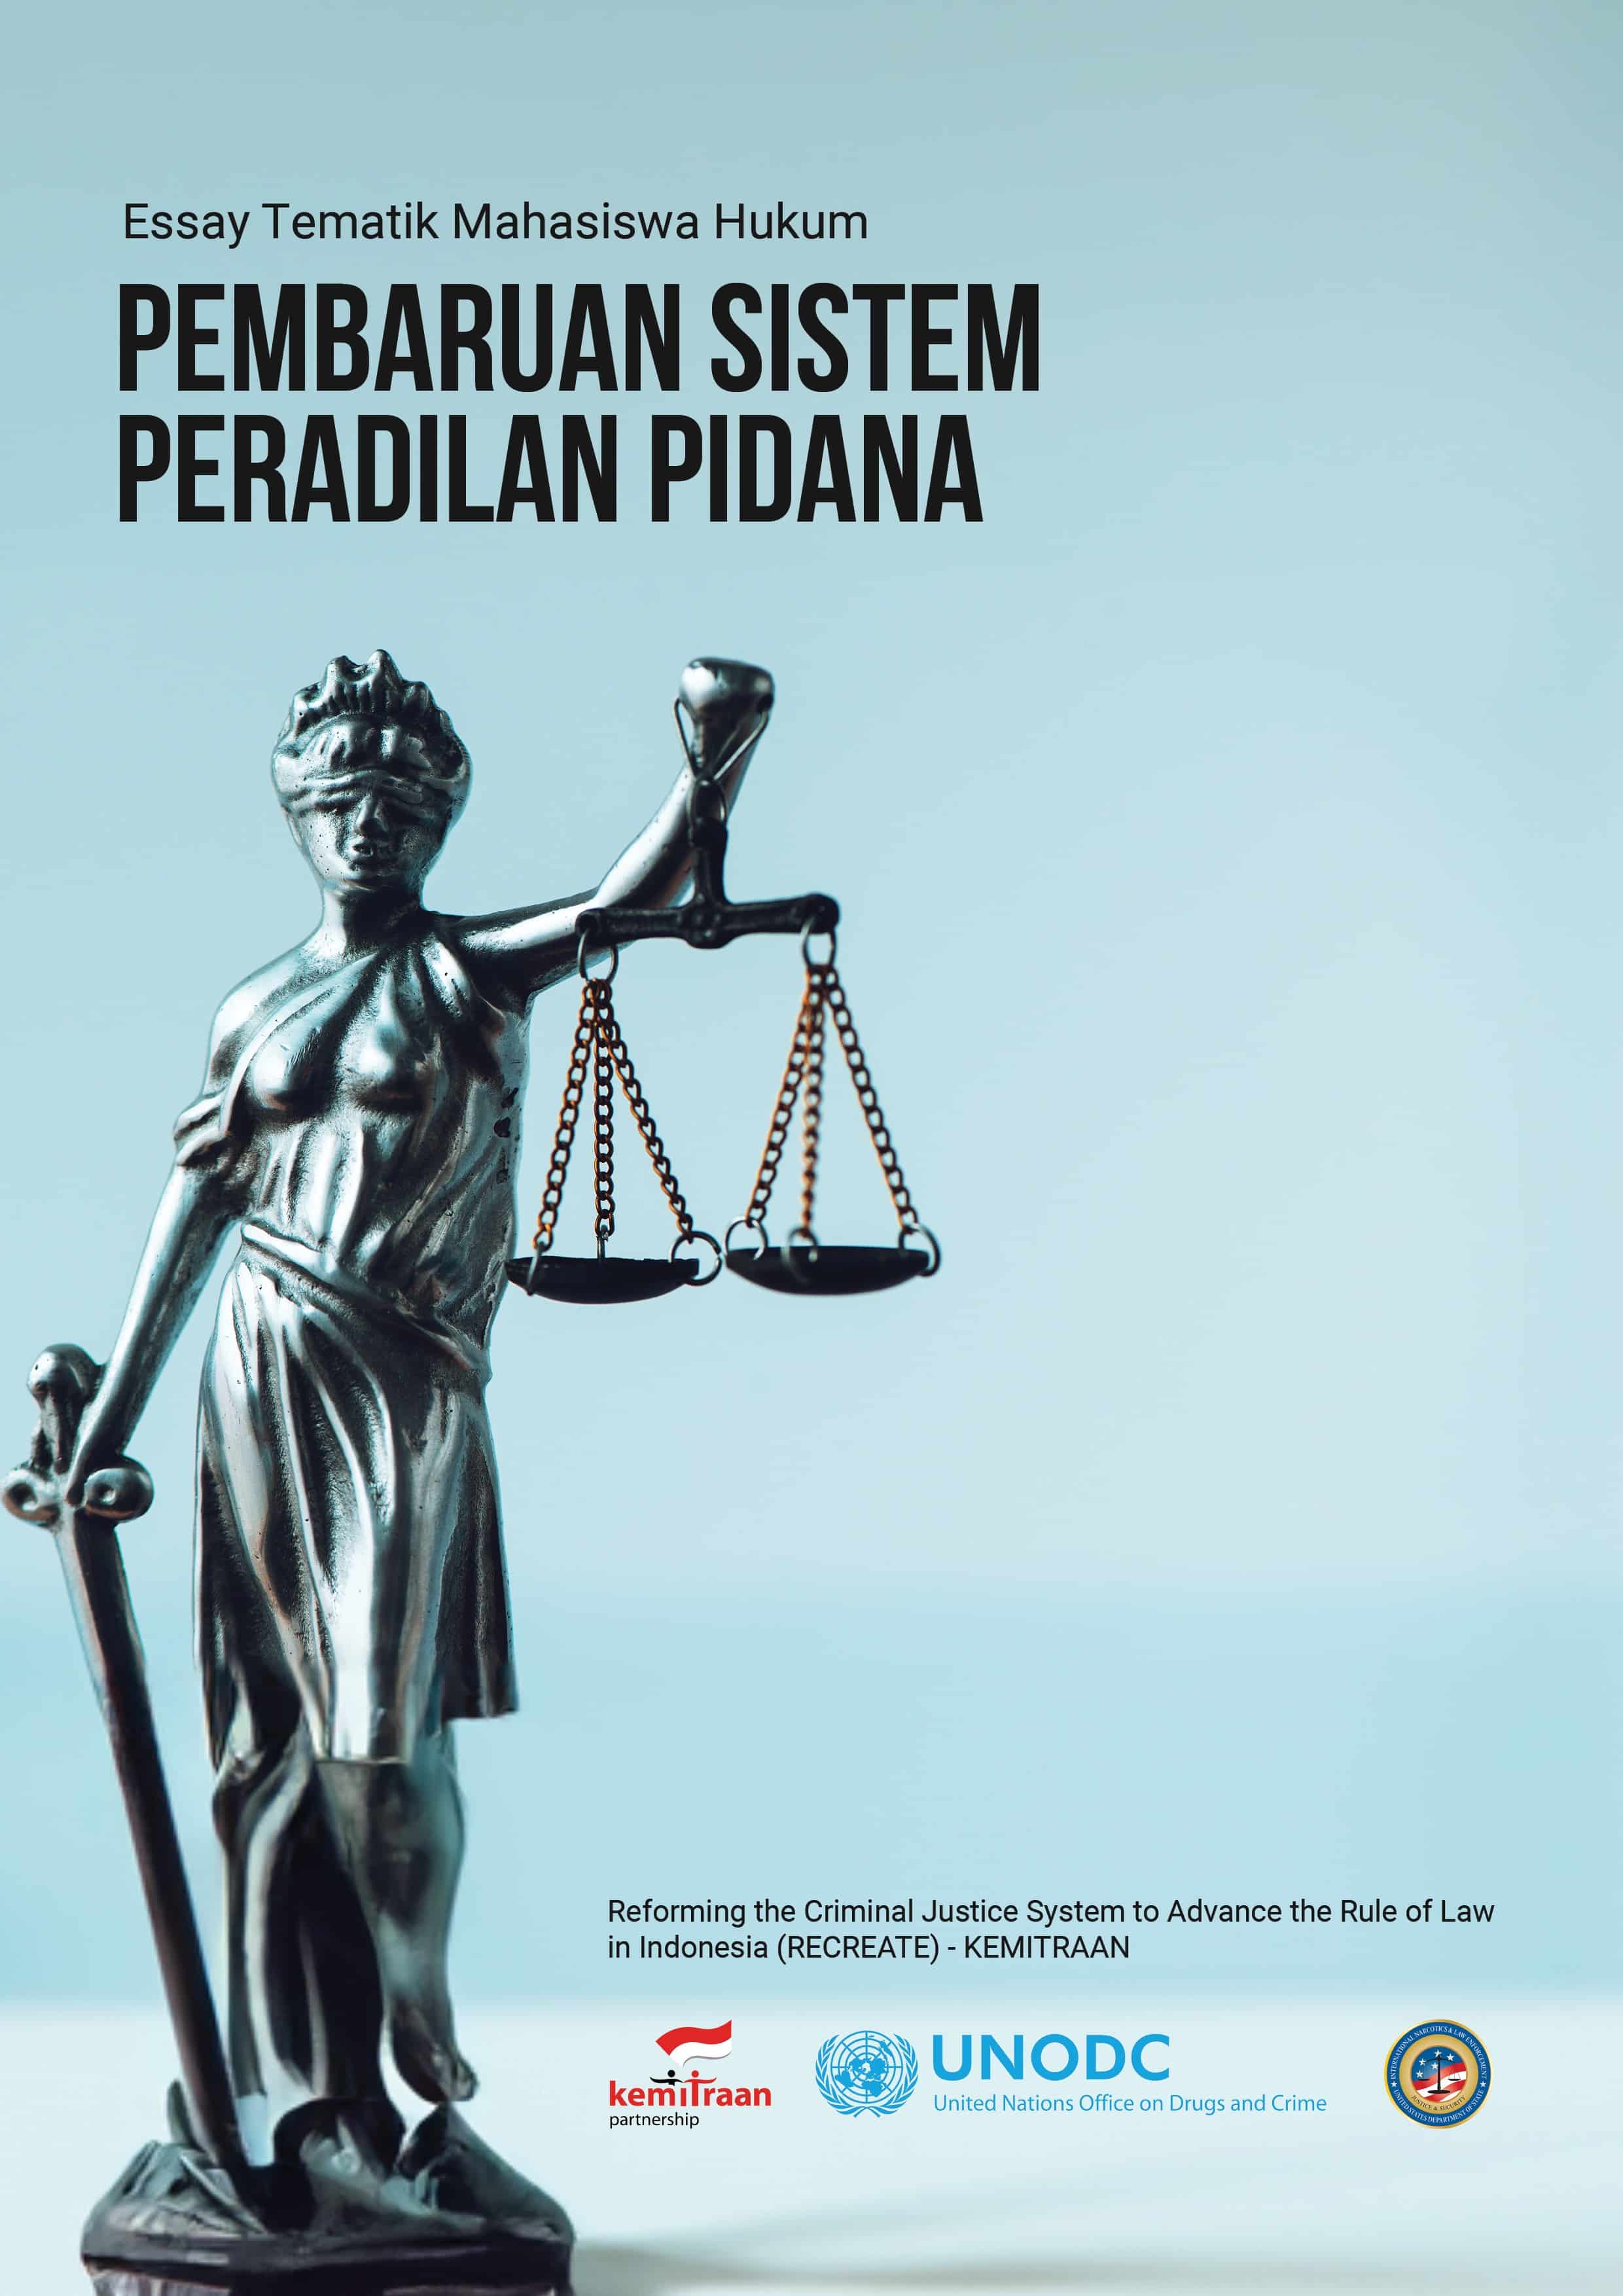 Essay Tematik Mahasiswa Hukum : Pembaruan Sistem Peradilan Pidana